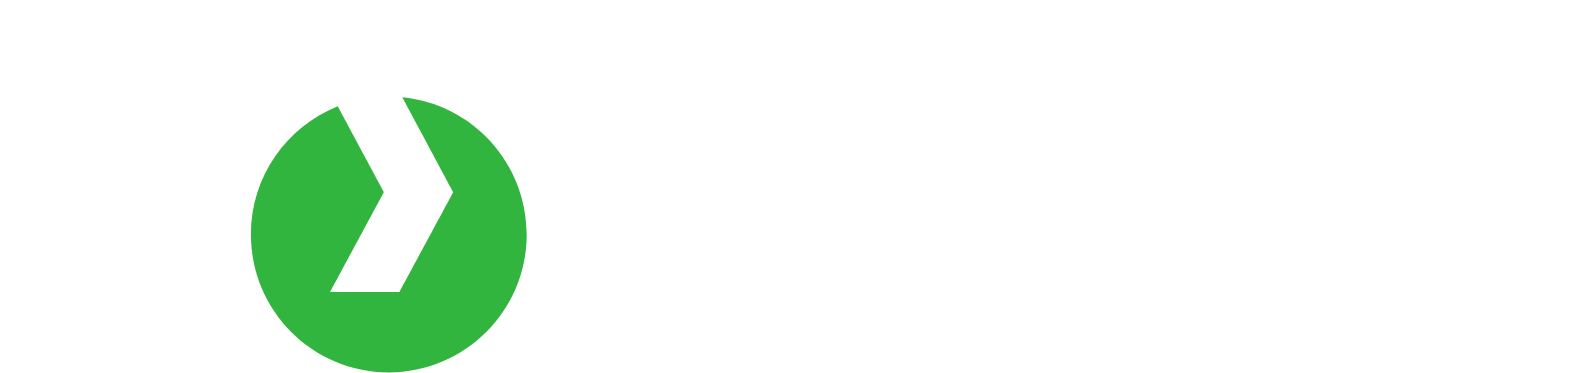 Vossloh AG logo large for dark backgrounds (transparent PNG)